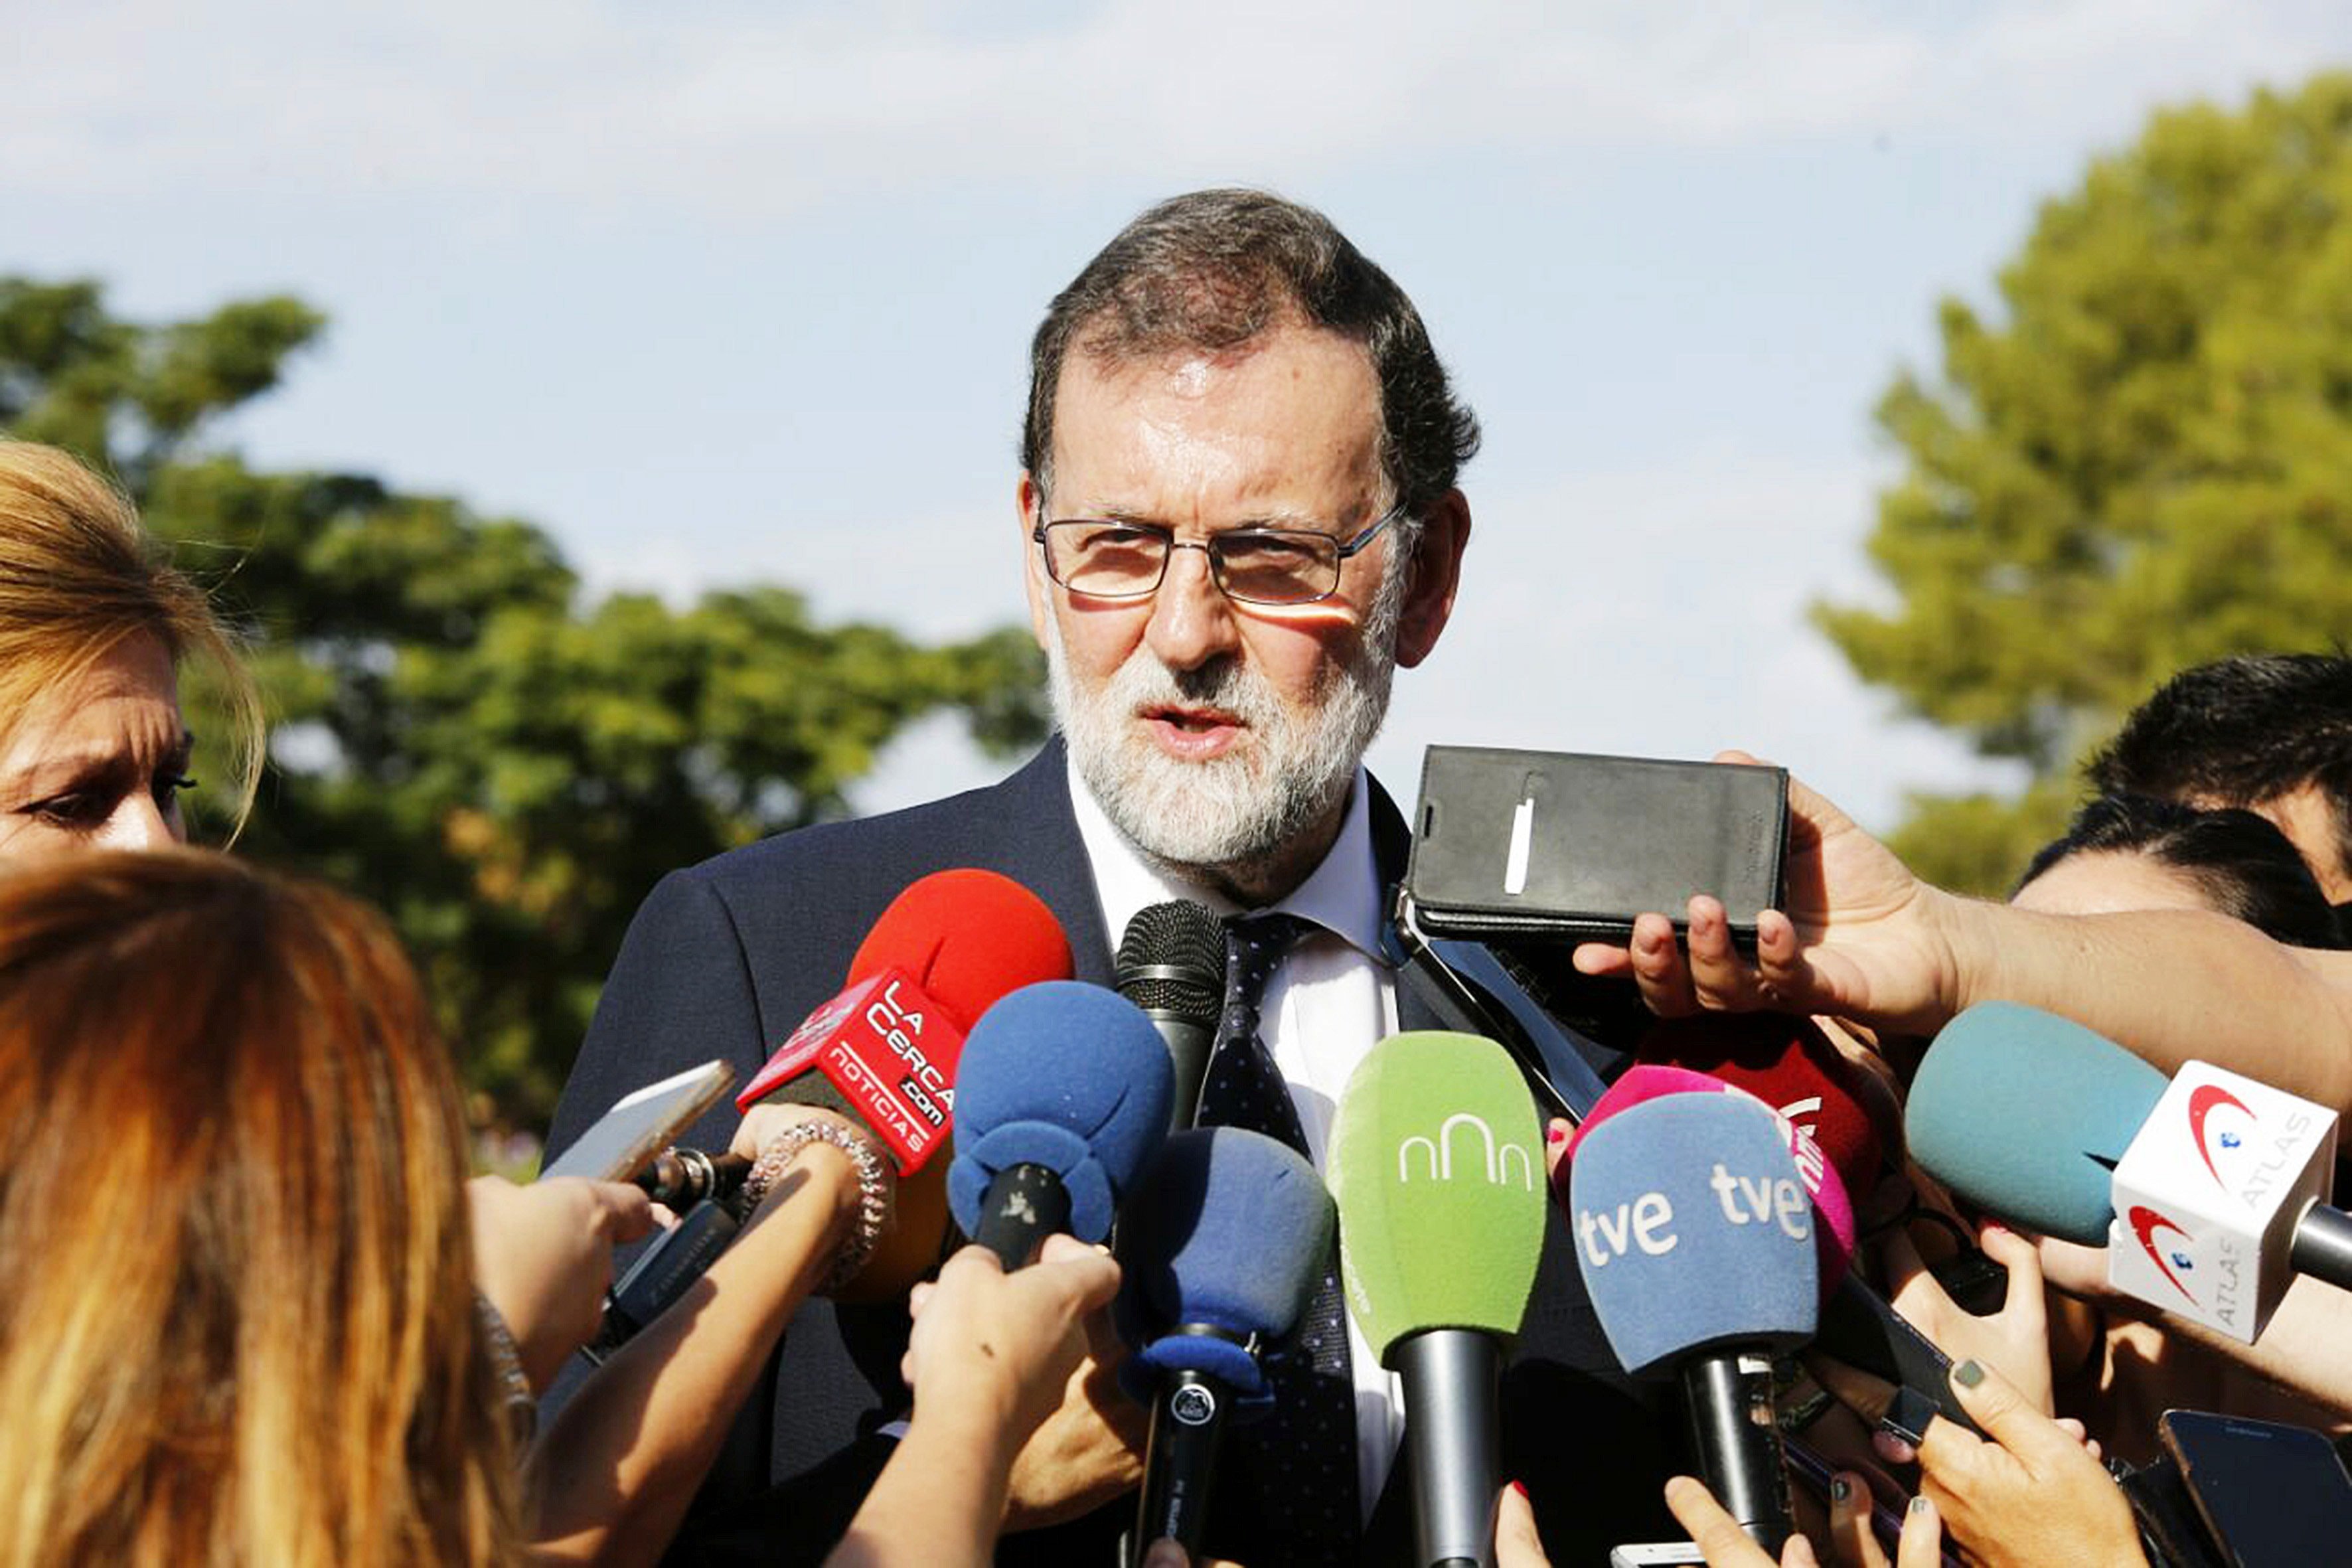 DOCUMENTO: La carta de respuesta de Rajoy a Puigdemont